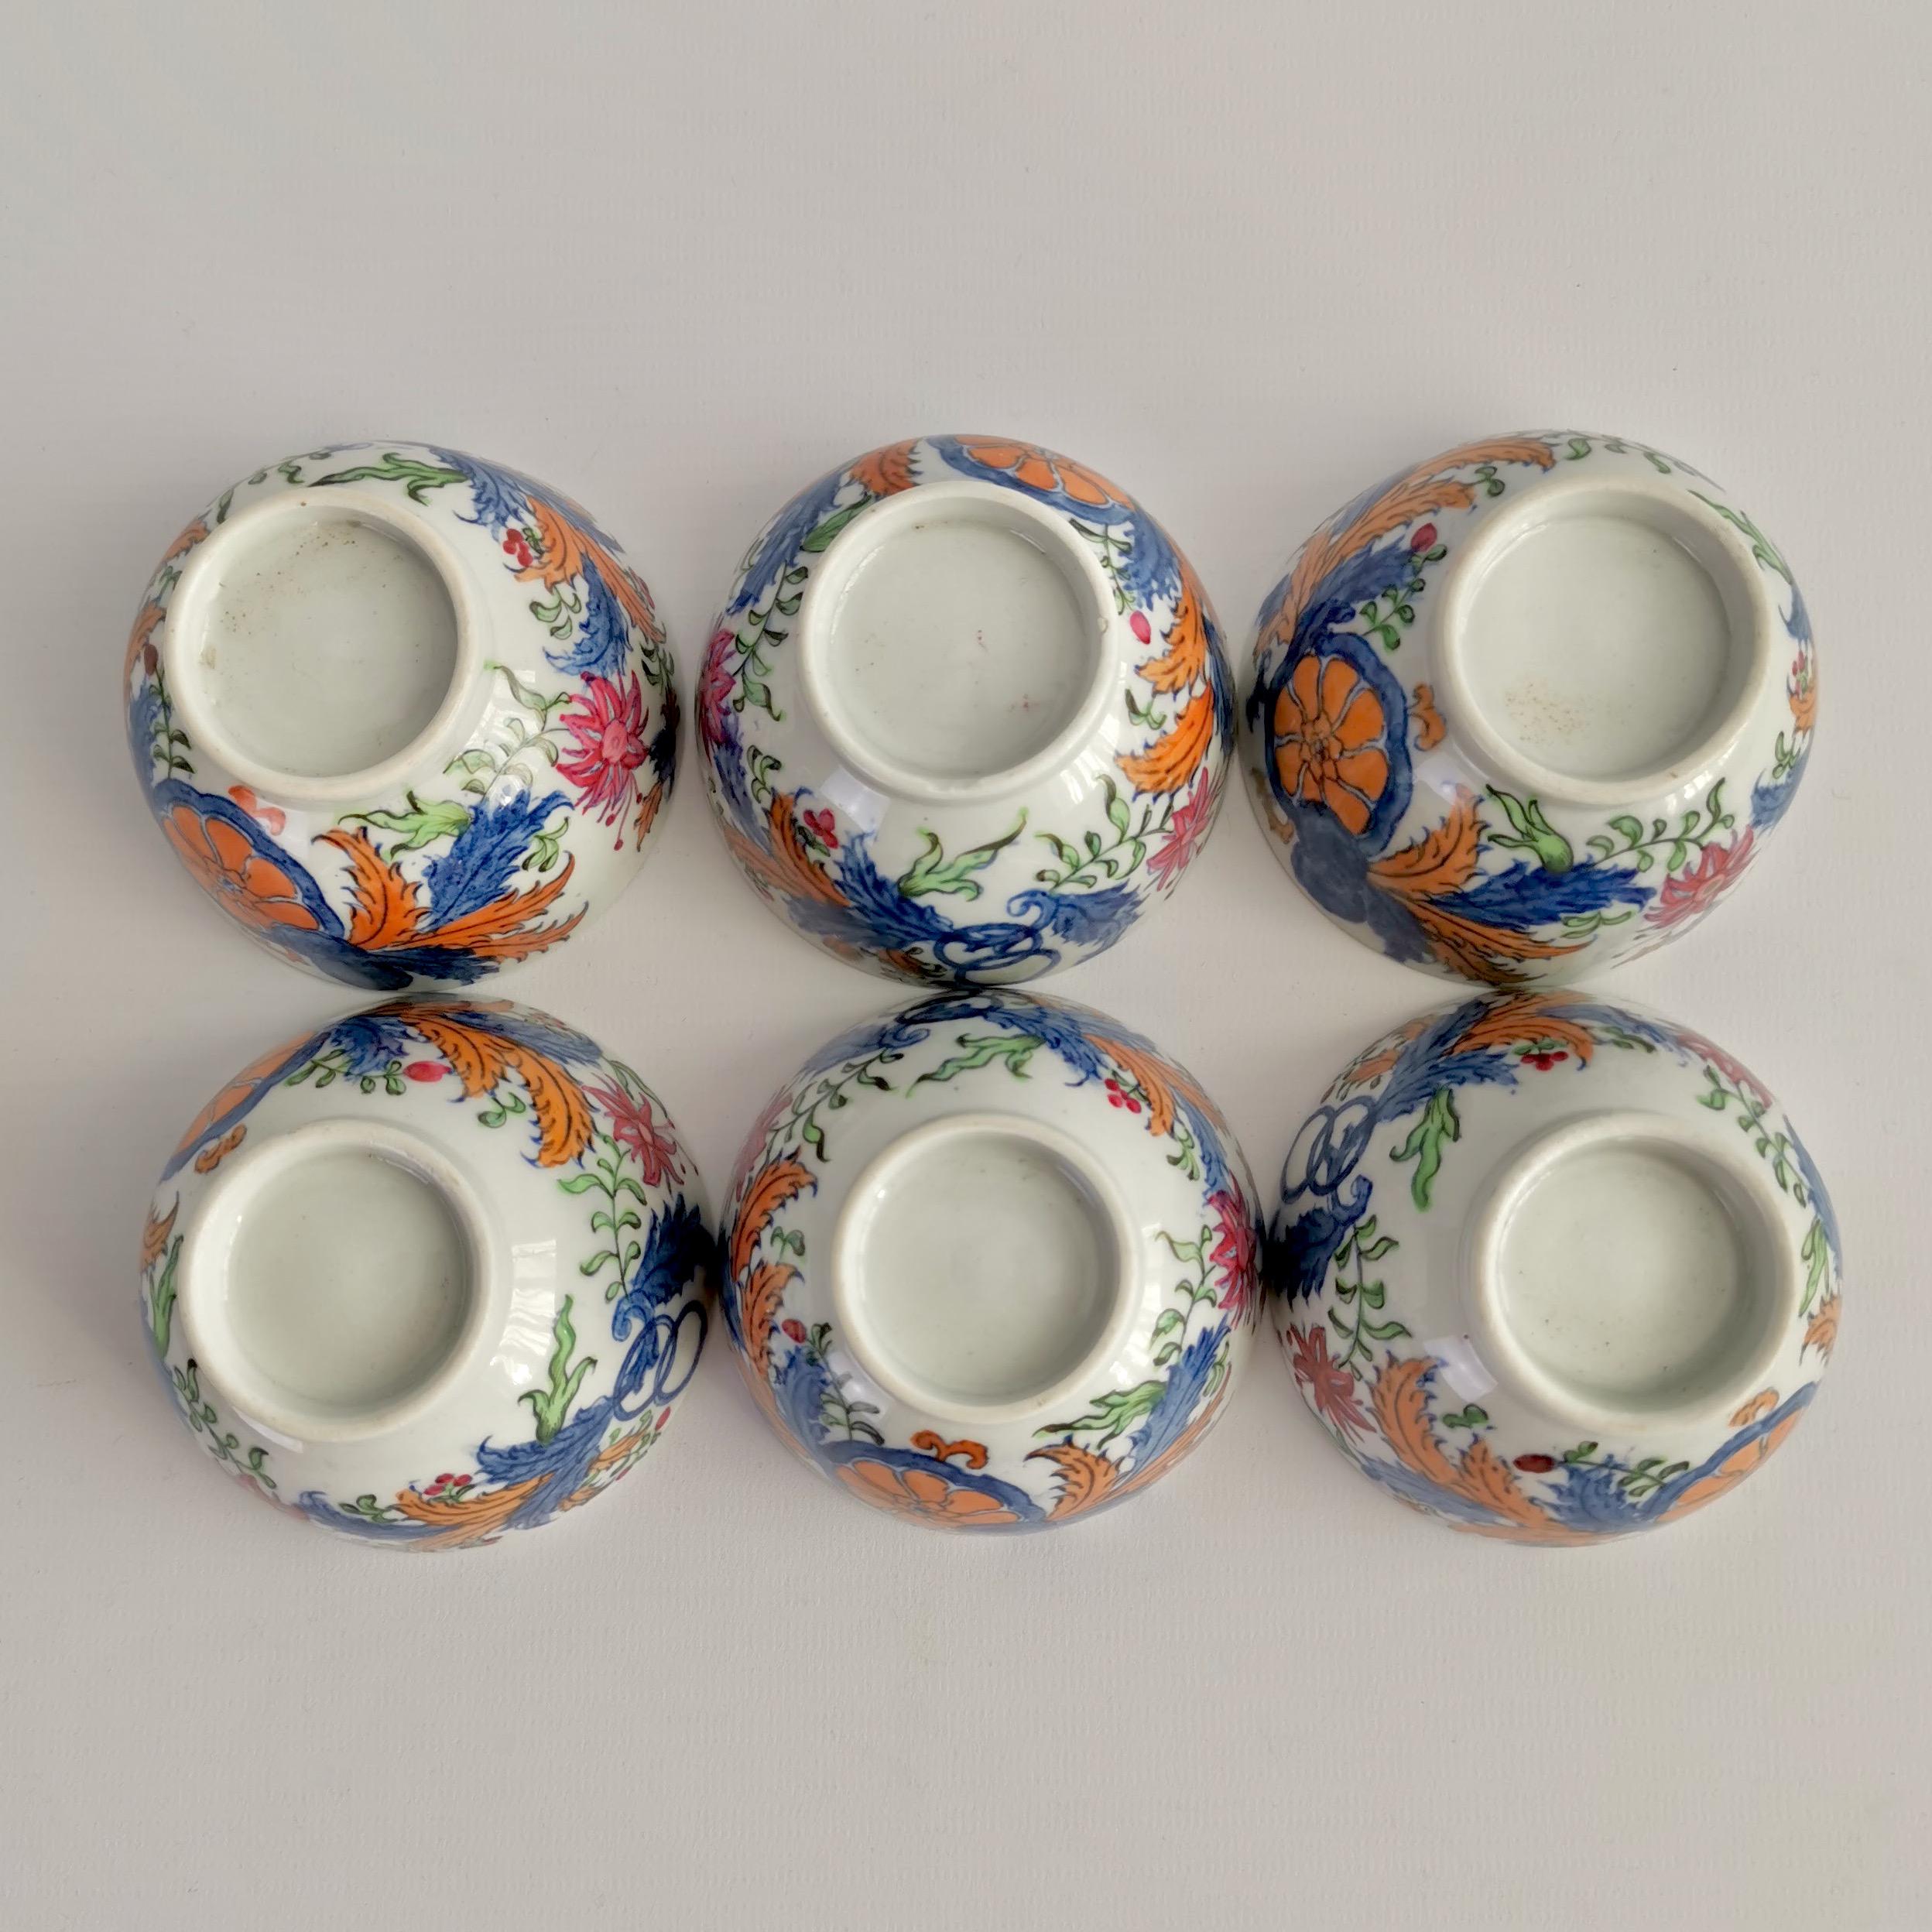 New Hall Porcelain Tea Service, Chinoiserie Flower Sprays, Georgian, circa 1795 For Sale 7